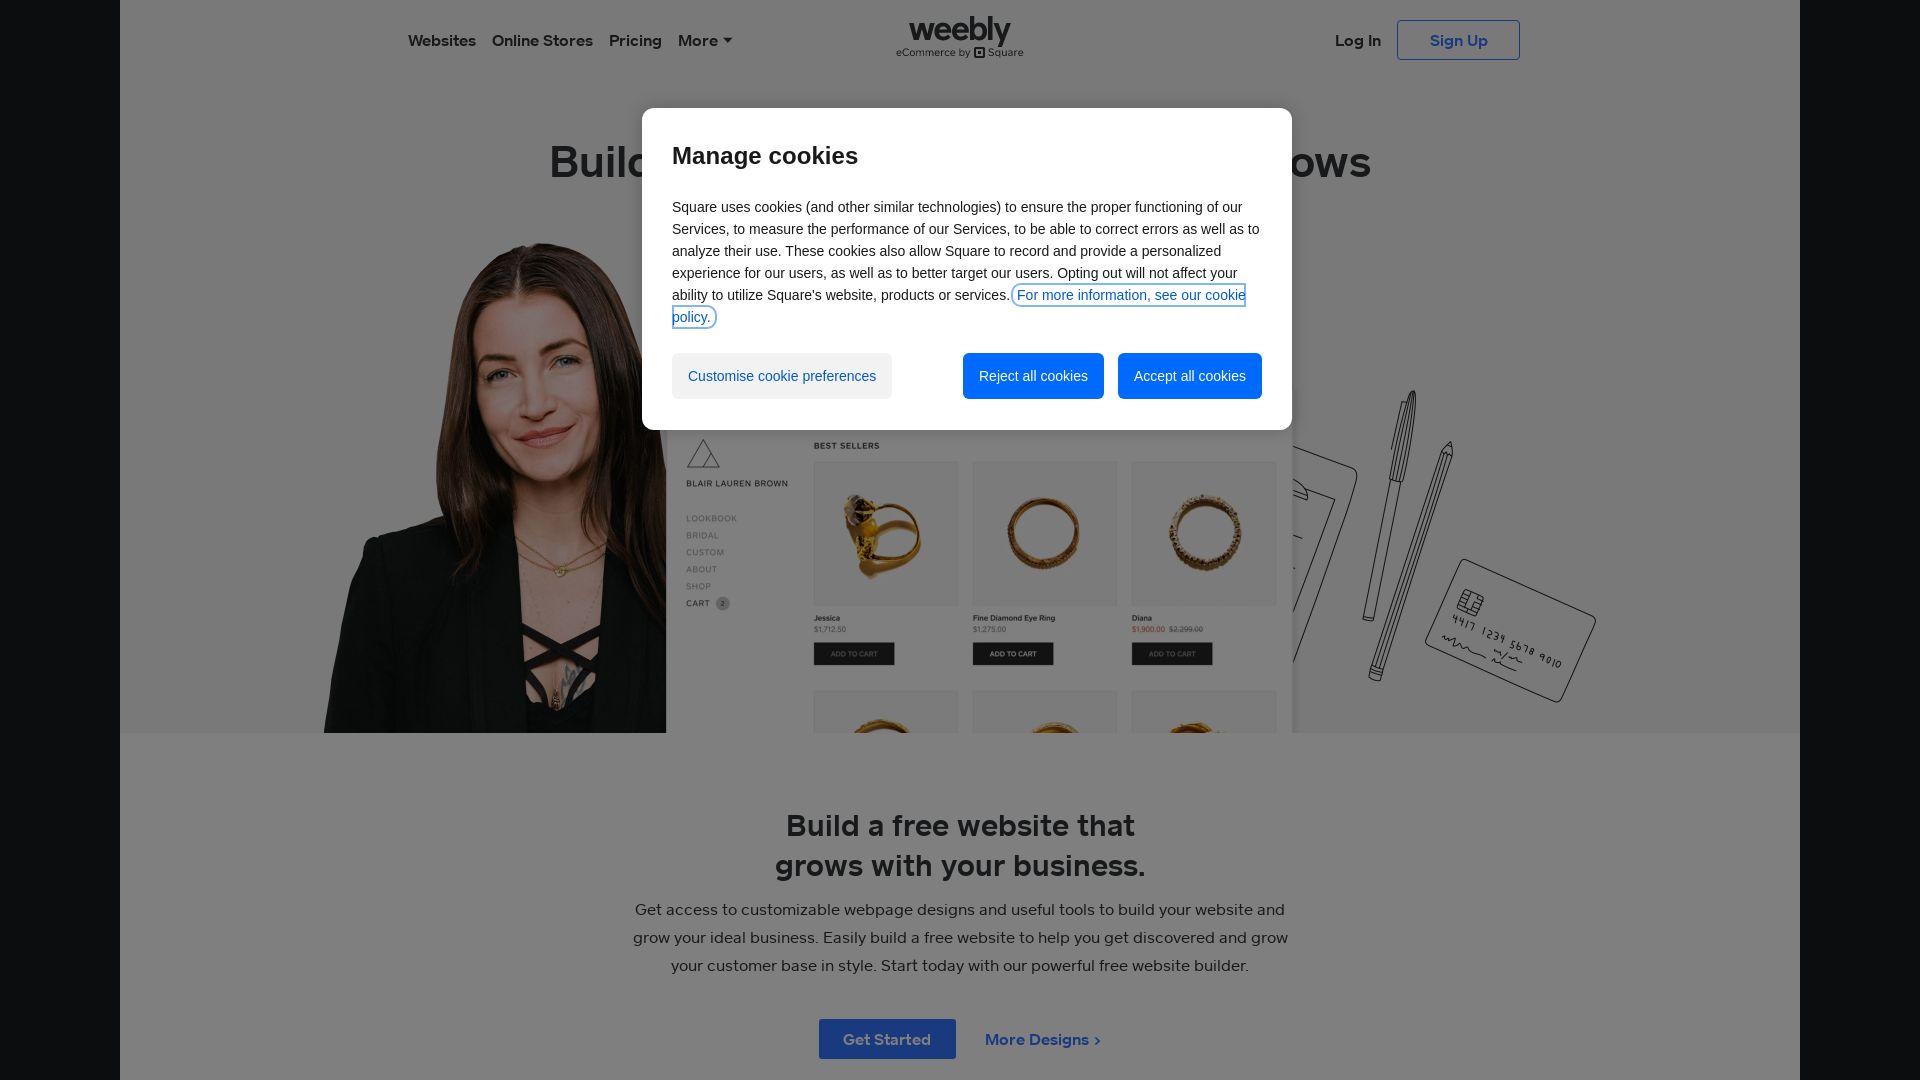 网站状态 weebly.com 是  在线的